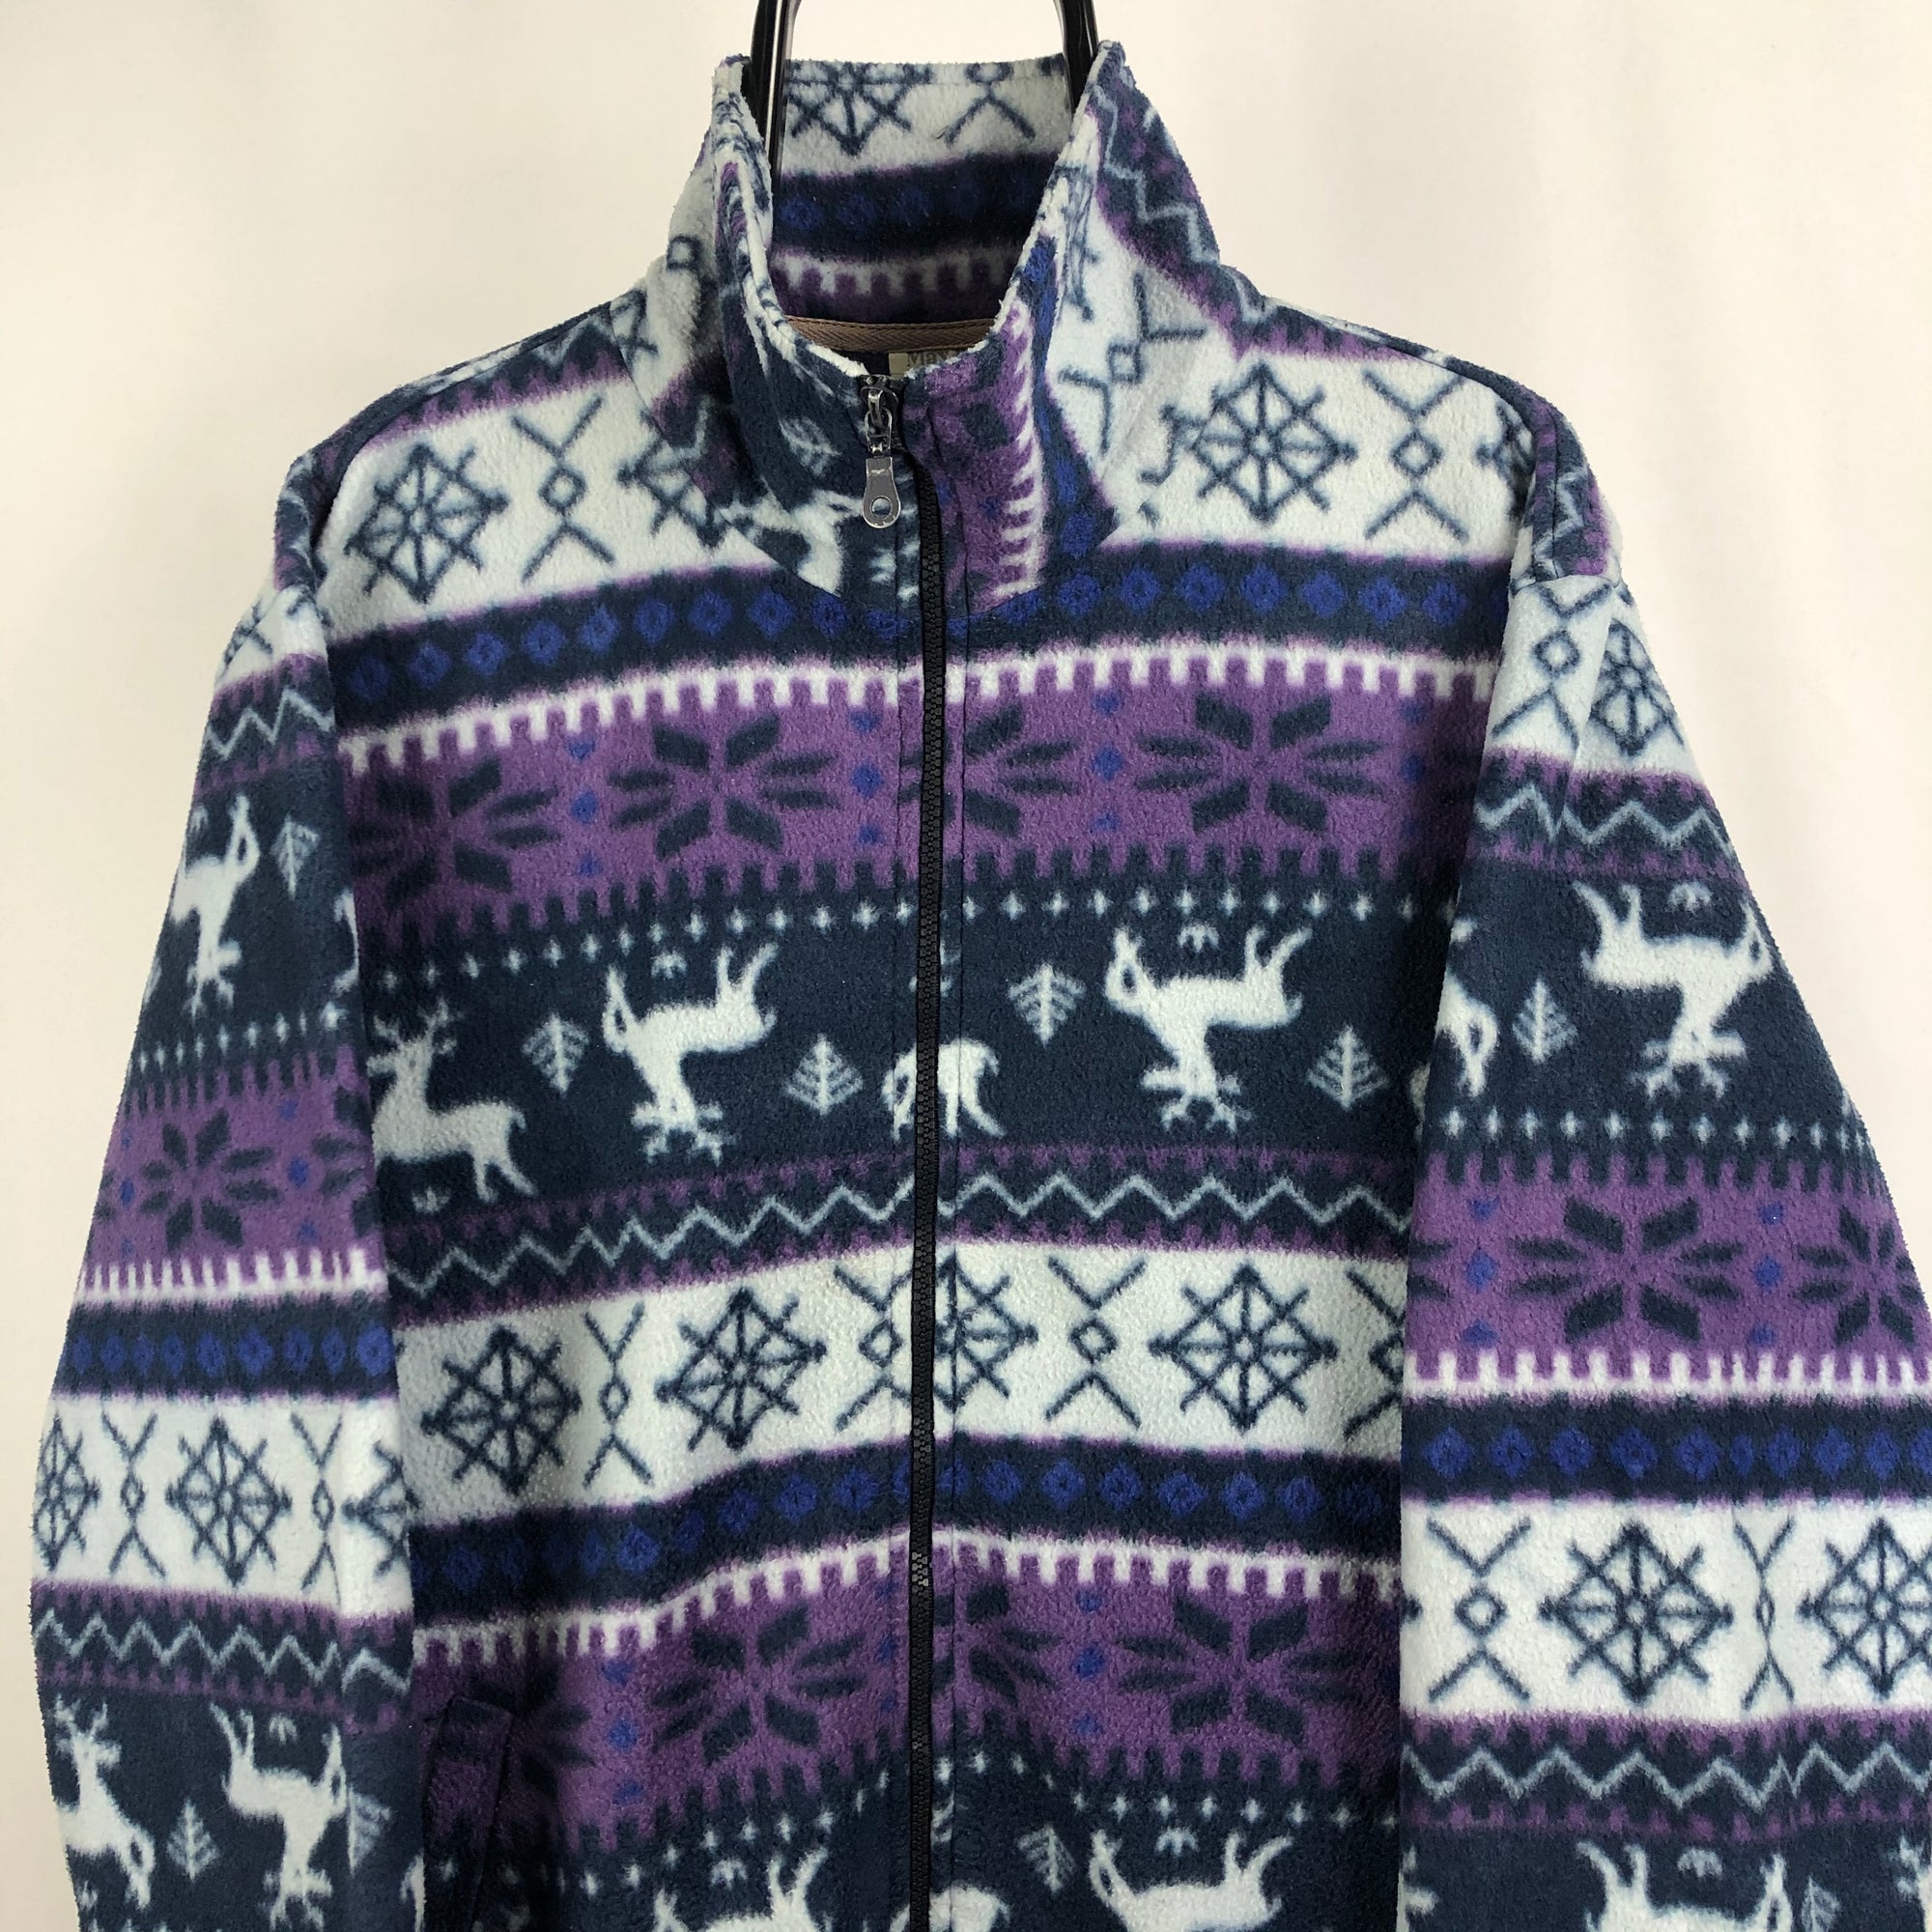 Vintage Reindeer Print Fleece in Purple/Blue - Men's Large/Women's XL